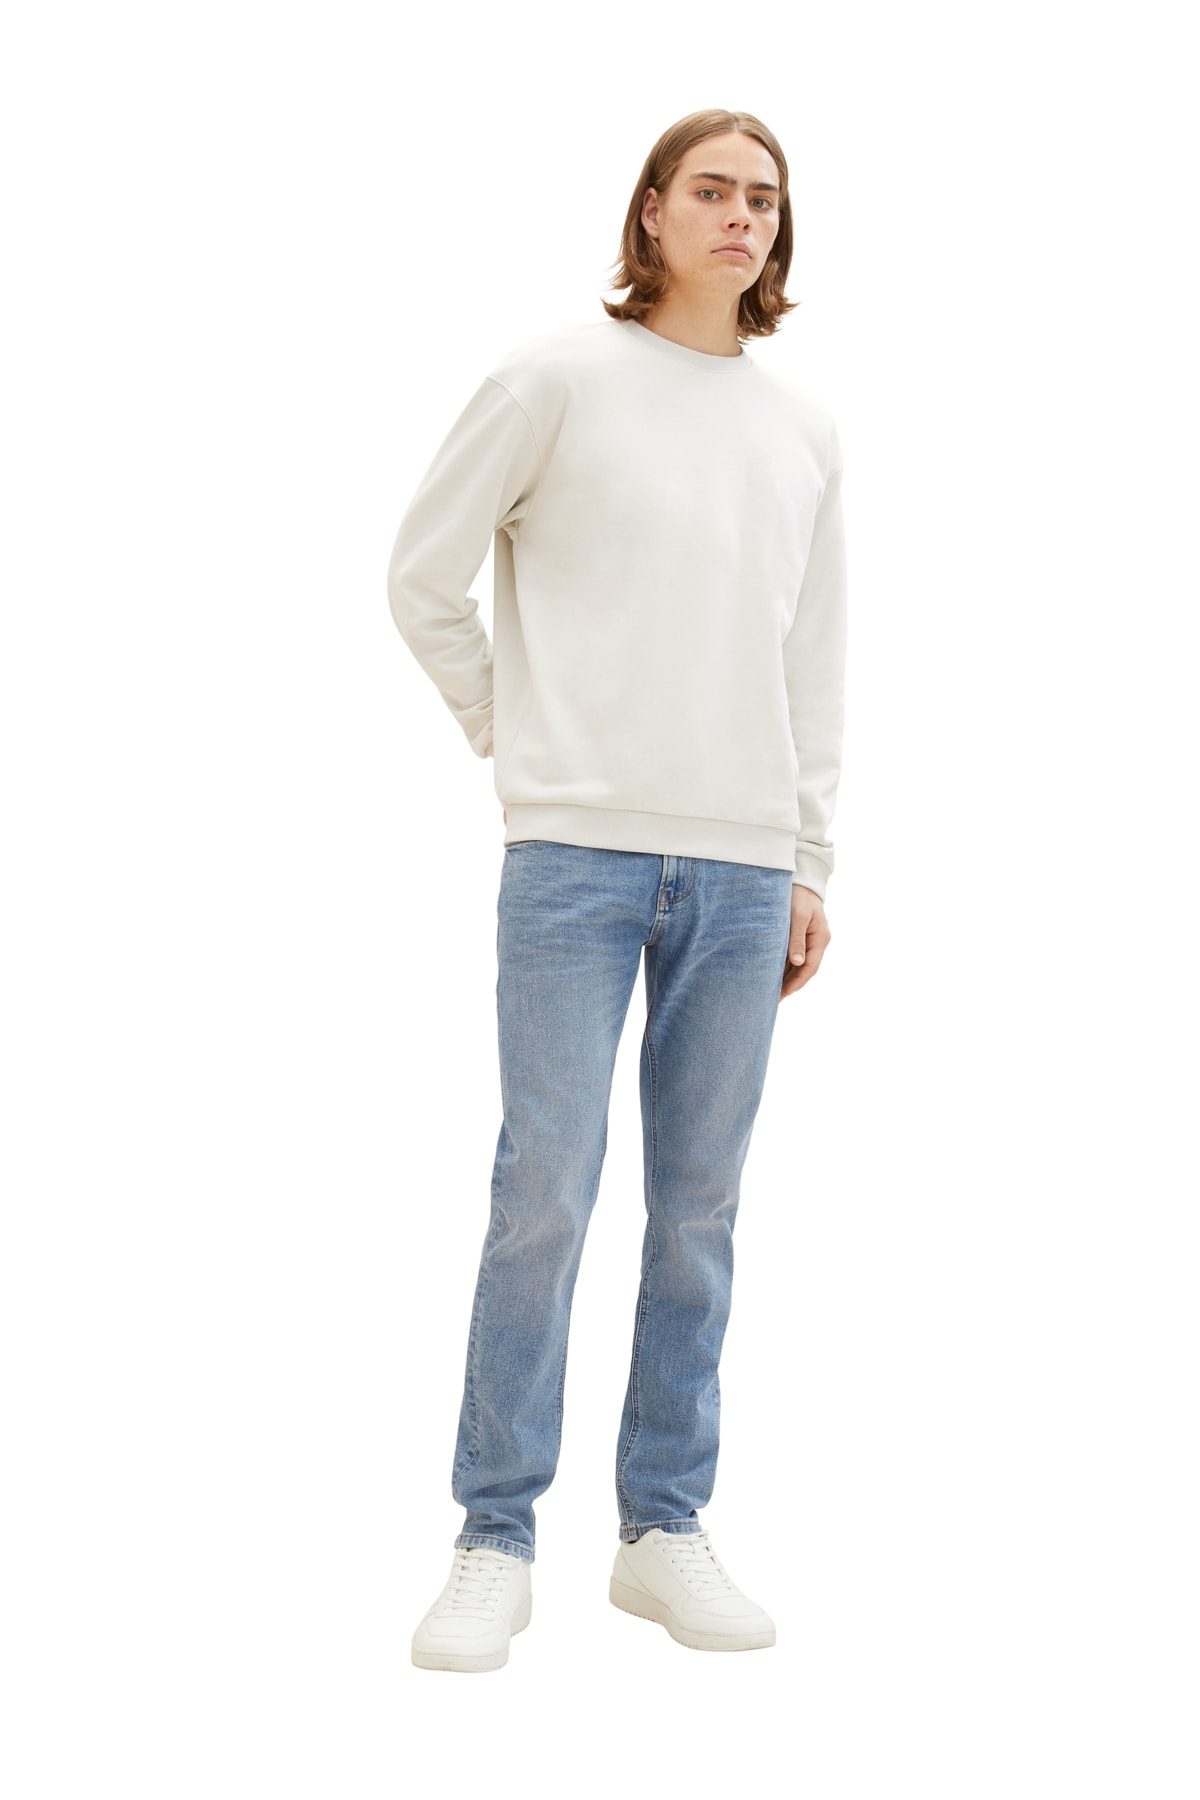 Джинсы - Серые - Прямые Tom Tailor Denim, серый джинсы серые широкие штанины tom tailor denim серый